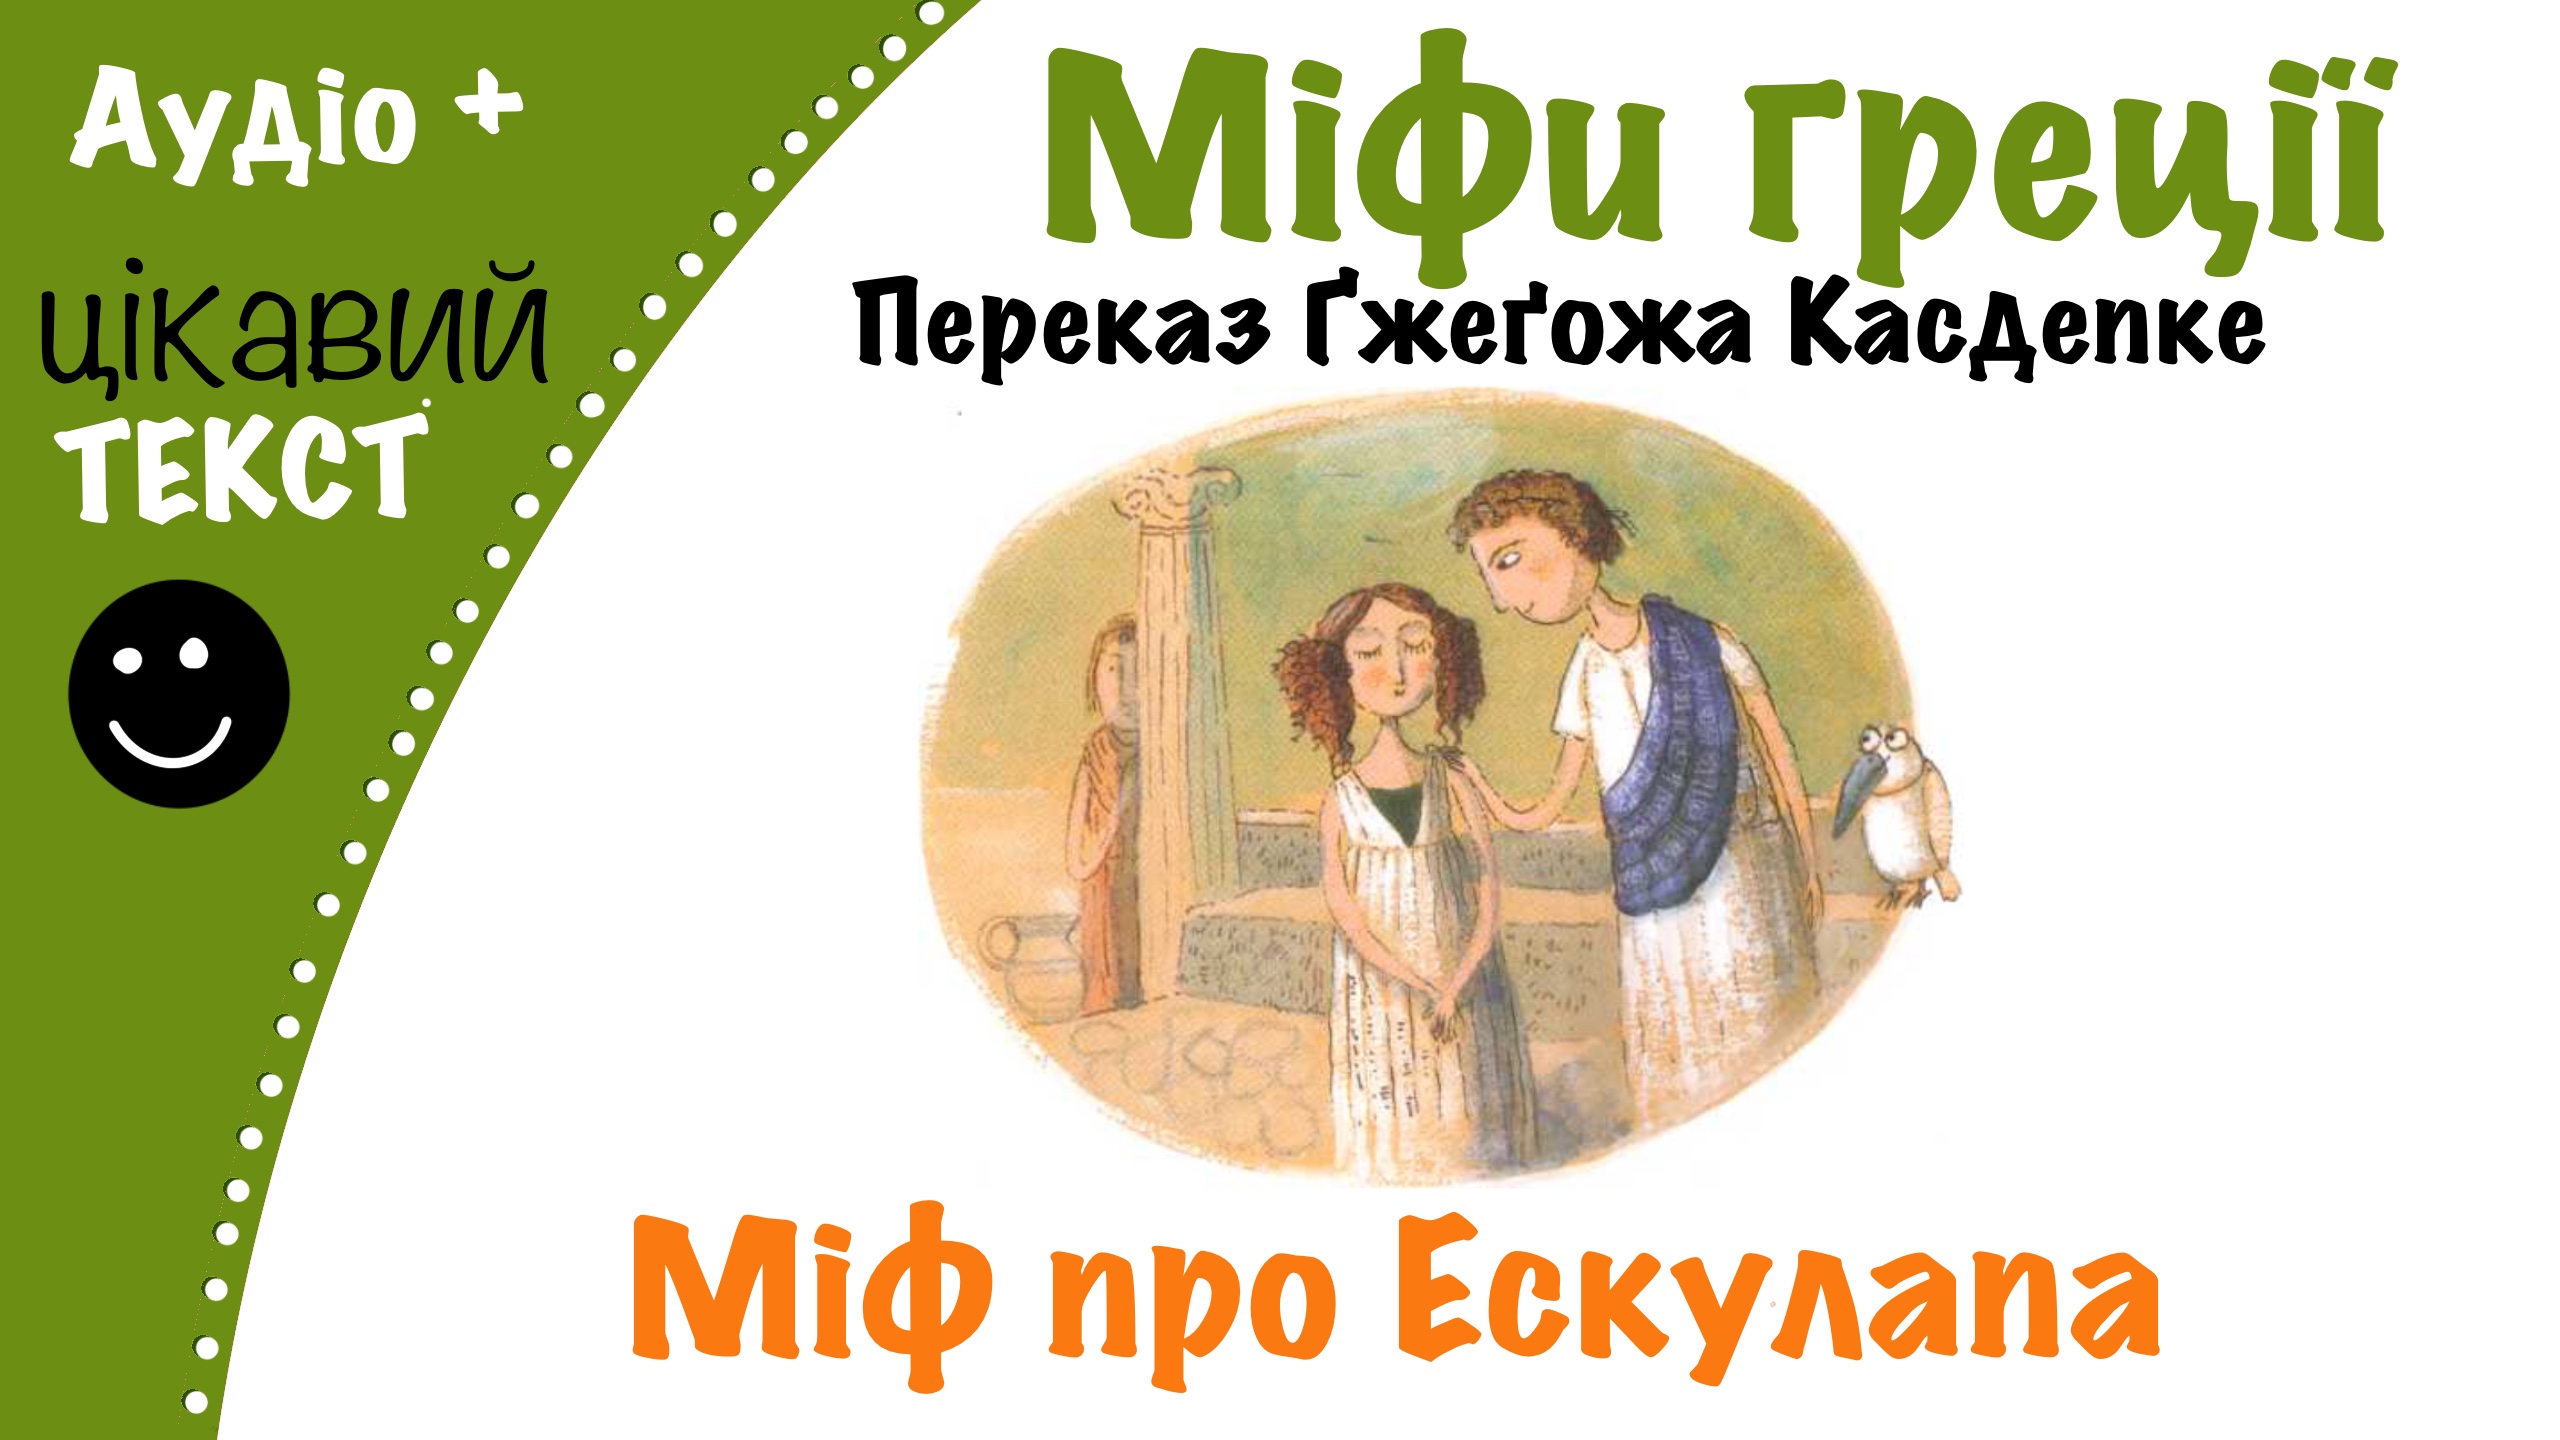 Перейти до: Грецький міф про Ескулапа. Переказ Ґжеґожа Касдепке